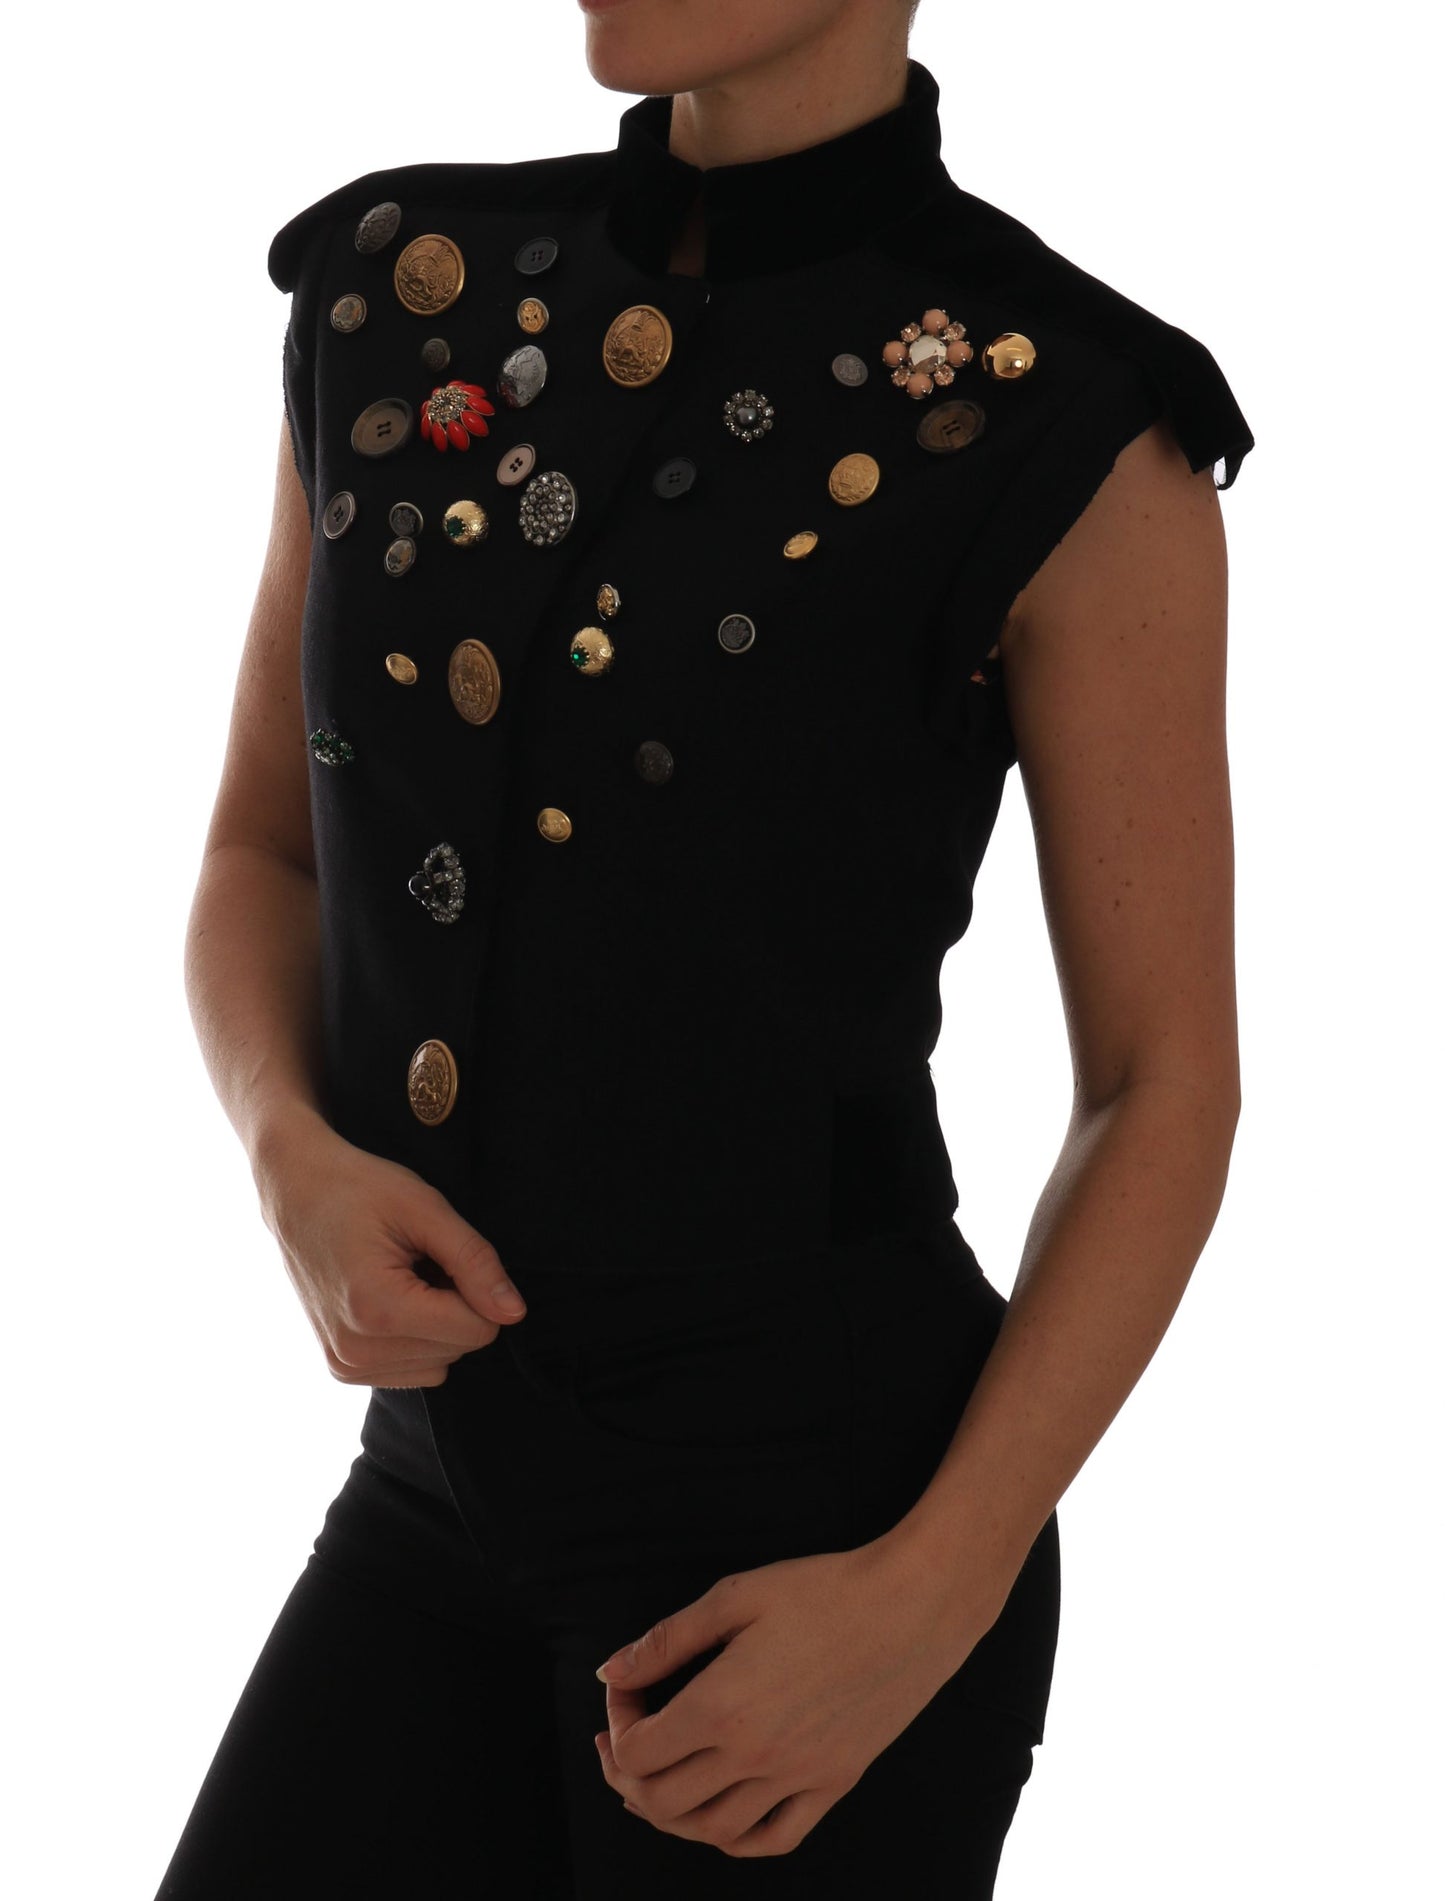 Embellished Black Military Style Vest